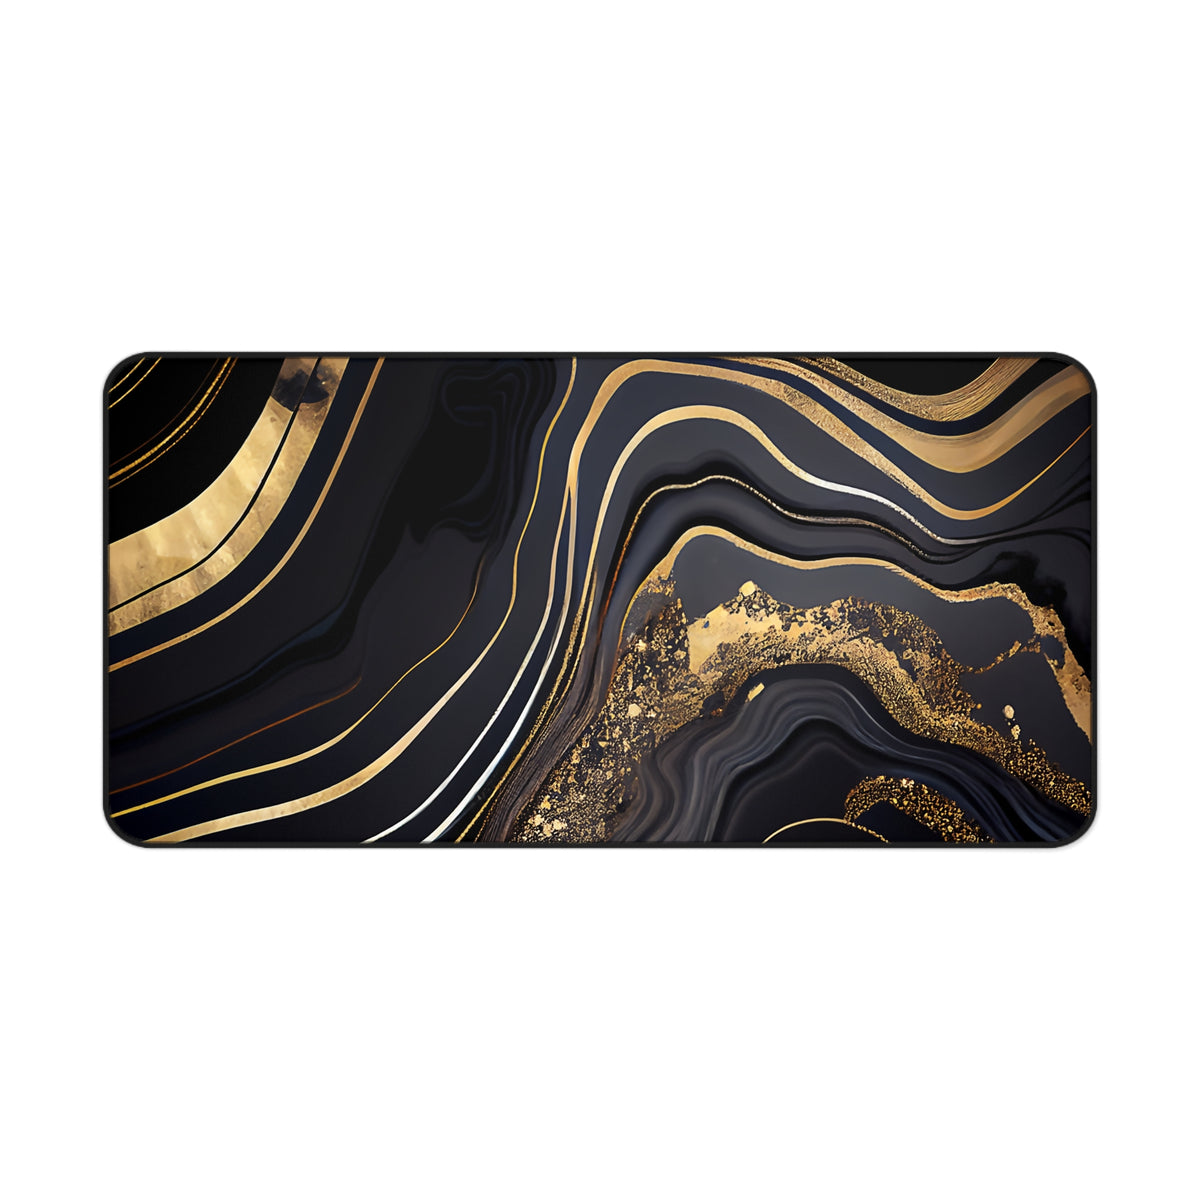 Black and gold marble design desk mat